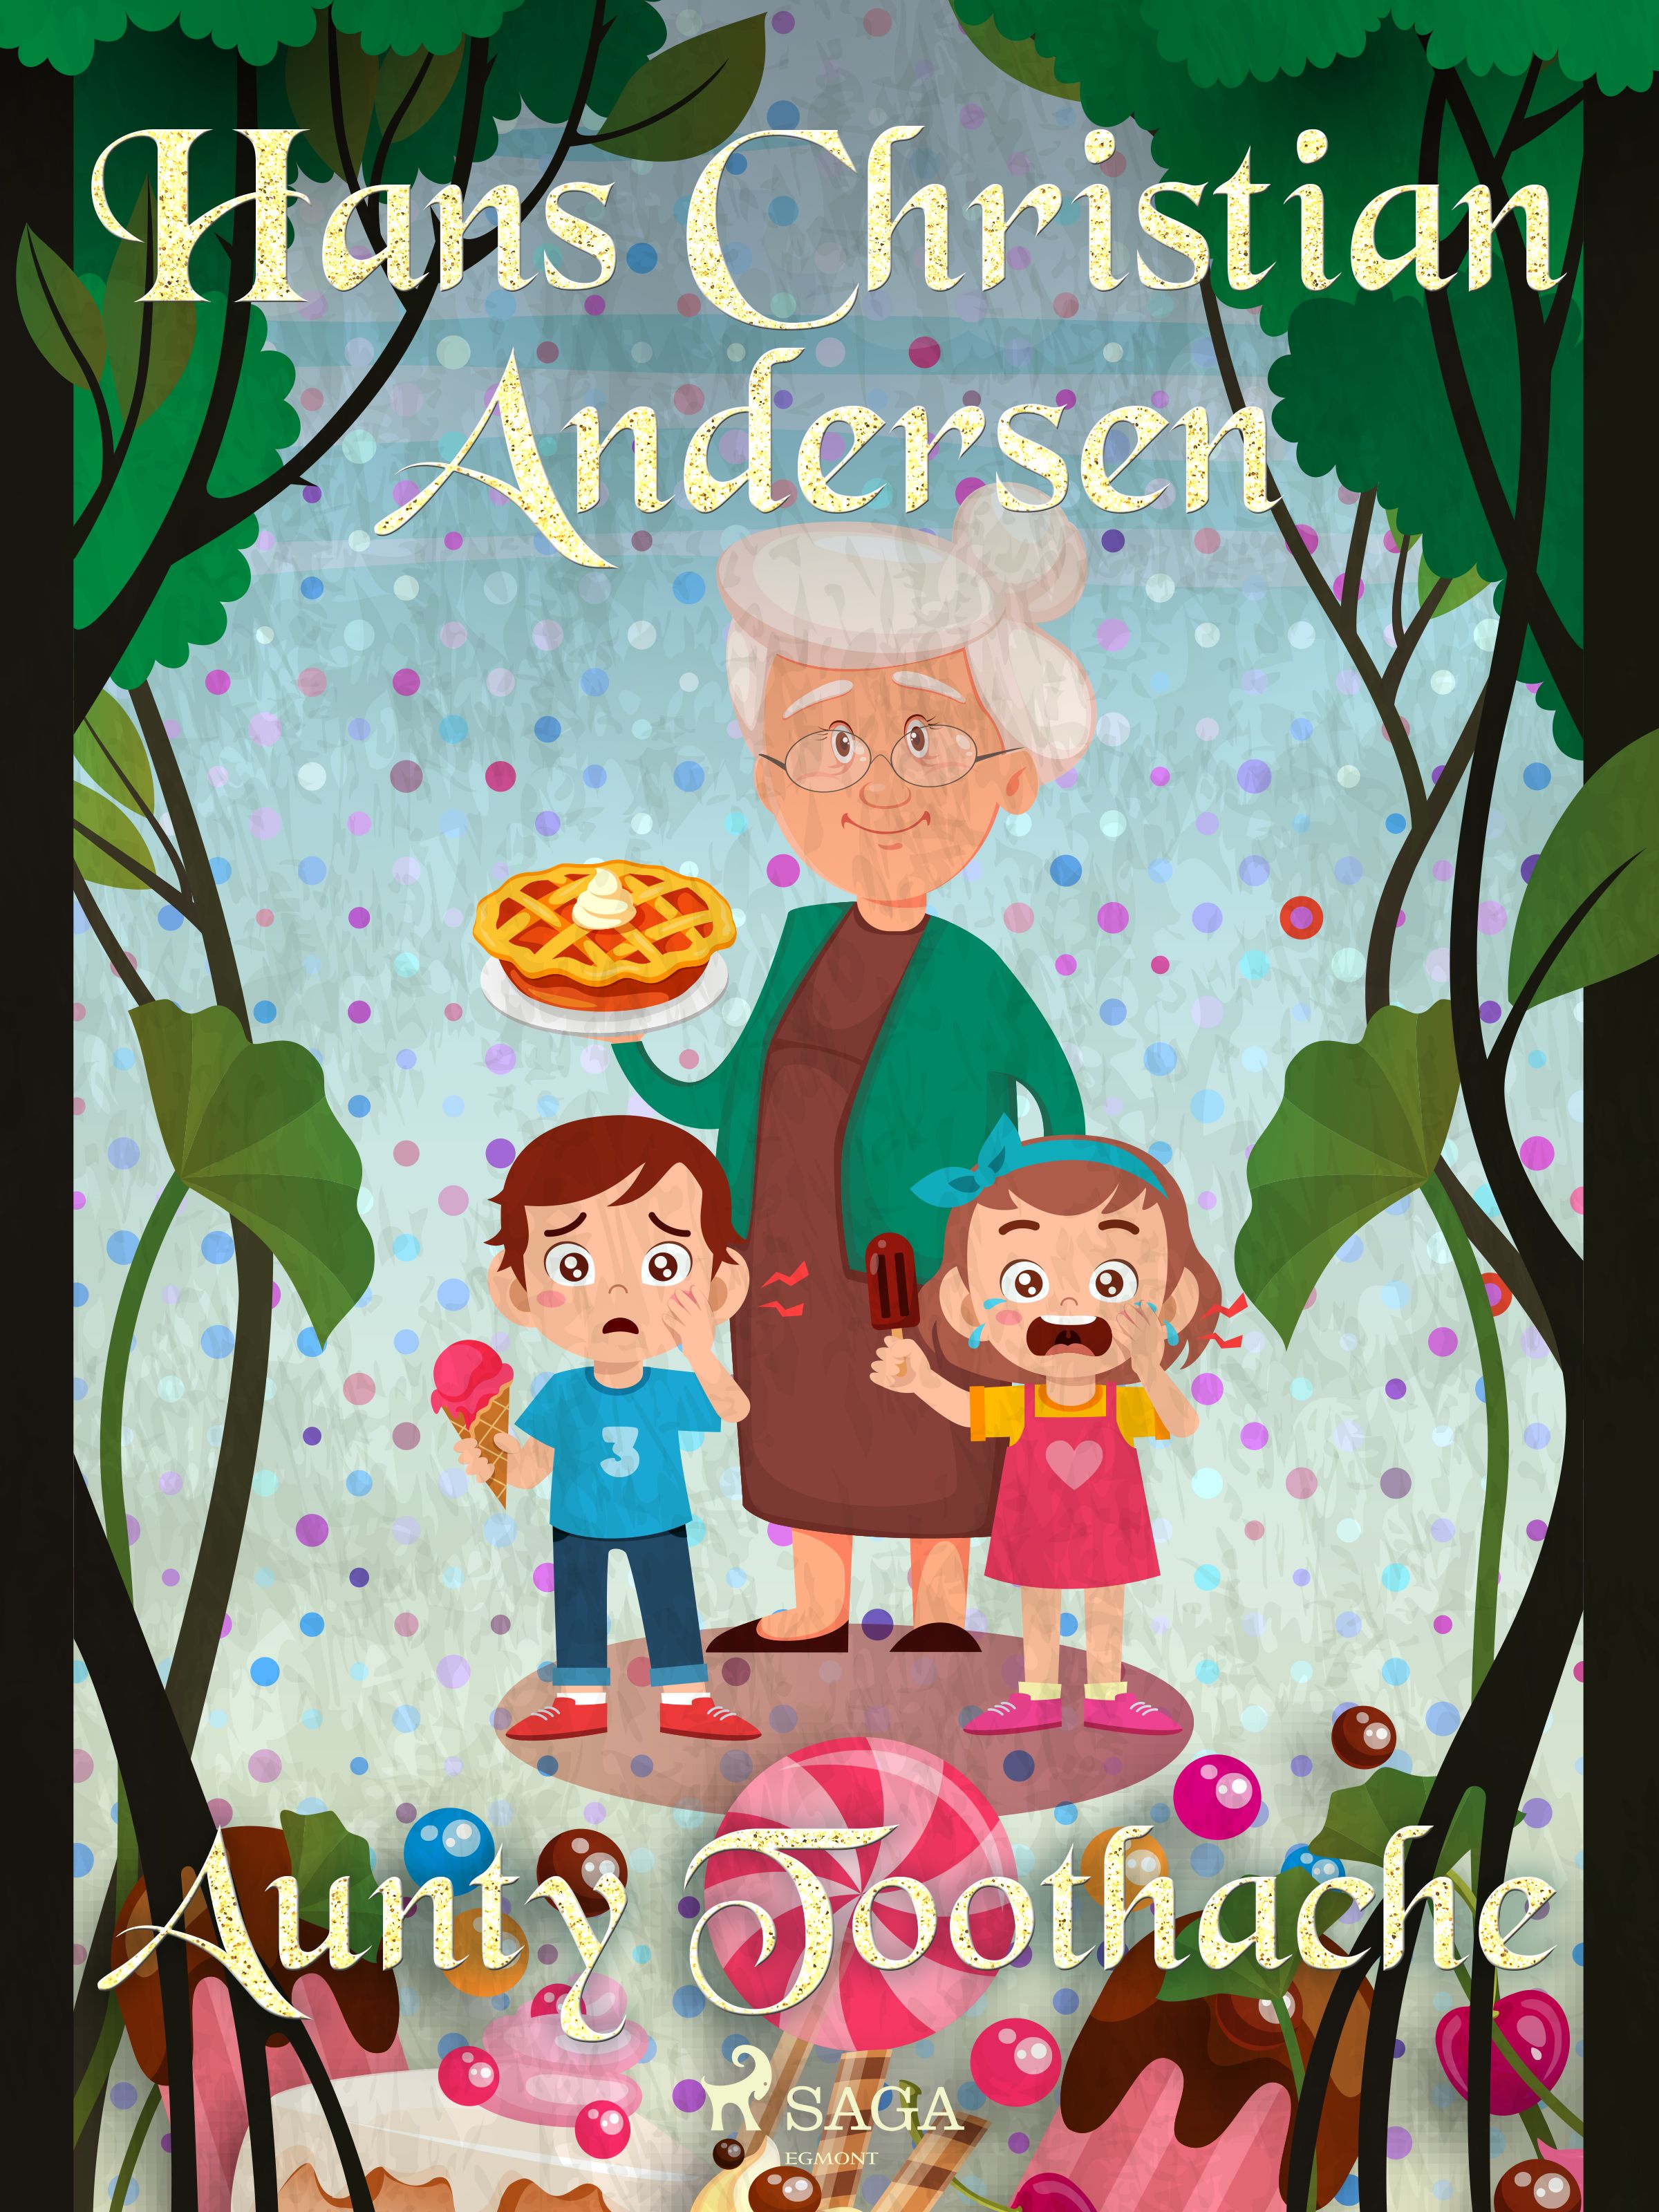 Aunty Toothache, e-bog af Hans Christian Andersen